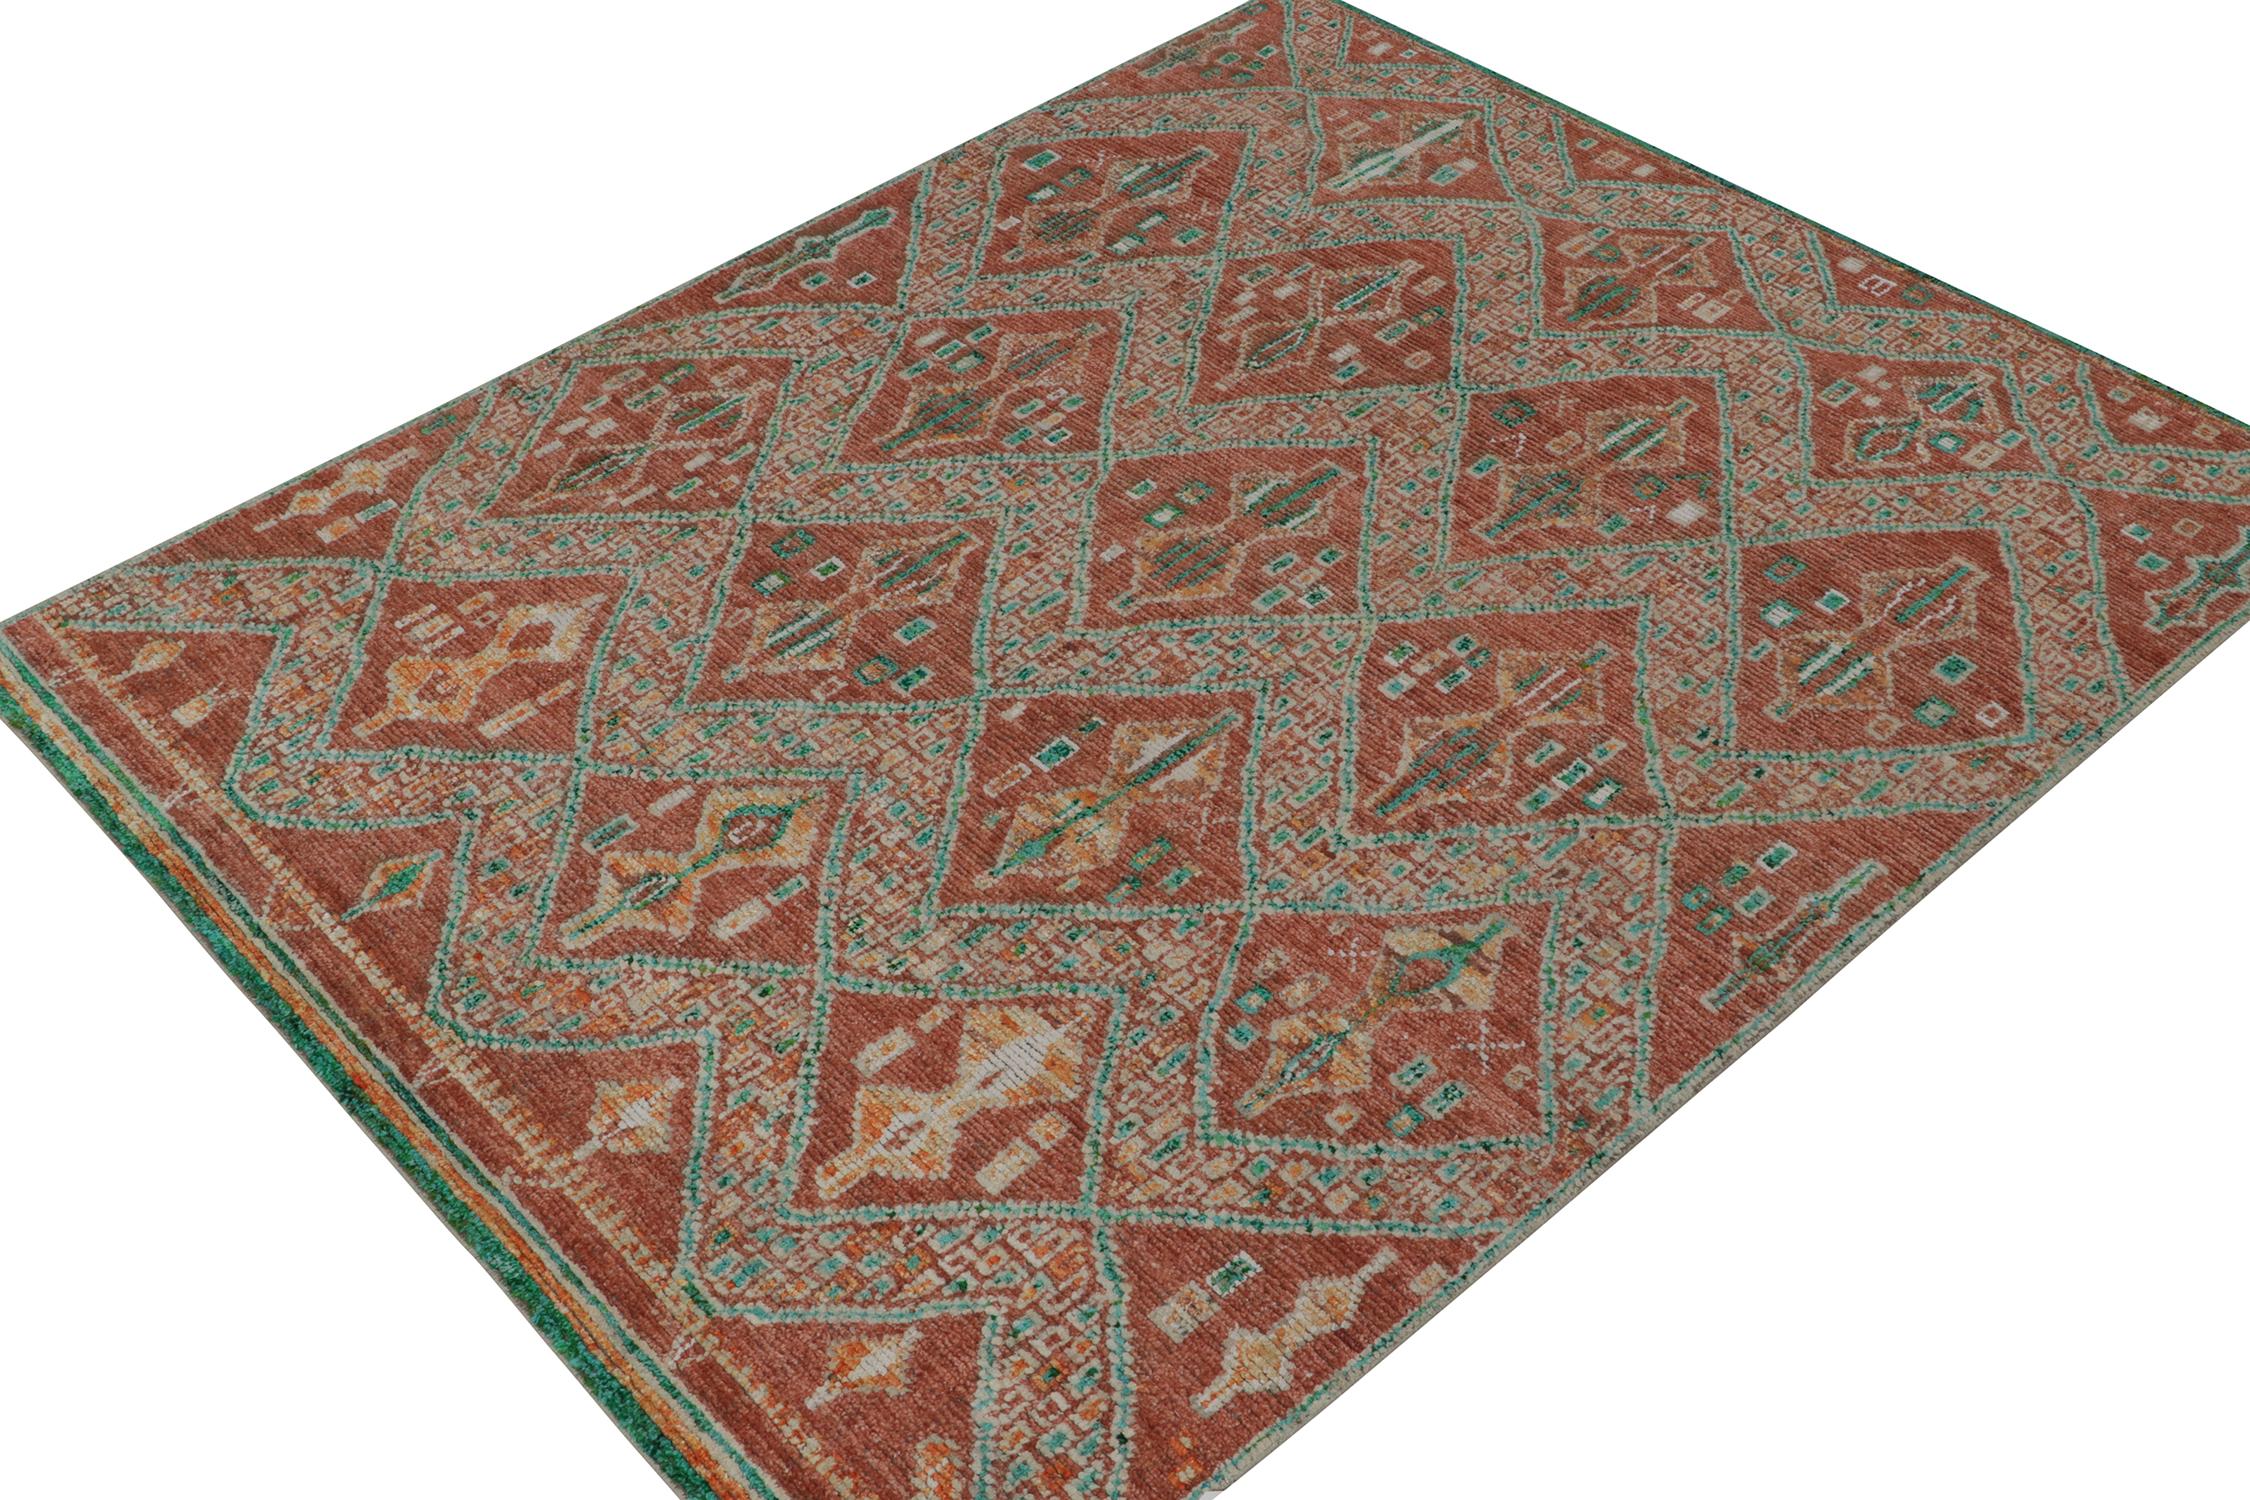 Ce tapis contemporain 9x11 est une entrée en force dans la nouvelle collection marocaine de Rug & Kilim, une version audacieuse de ce style emblématique. Noué à la main en laine, soie et coton.
Plus loin dans la conception :
La pièce s'inspire de